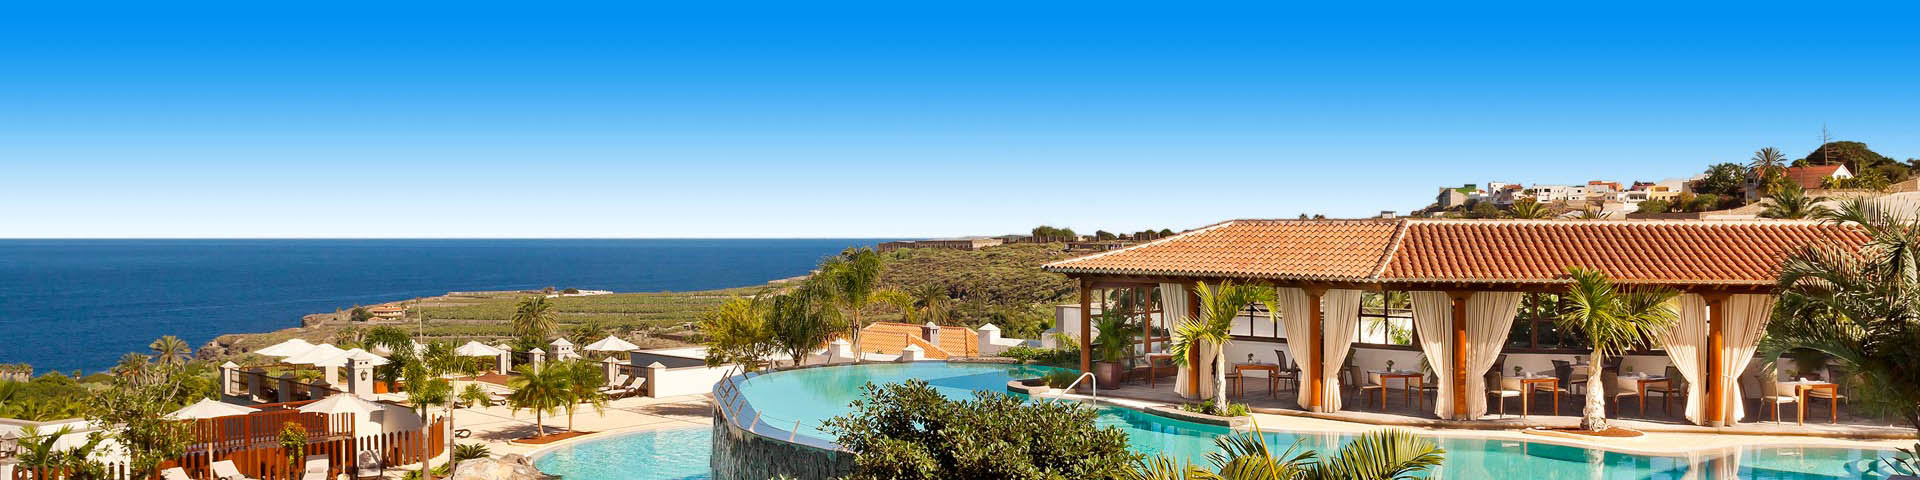 Luxe all inclusive resort met zwembad op Tenerife